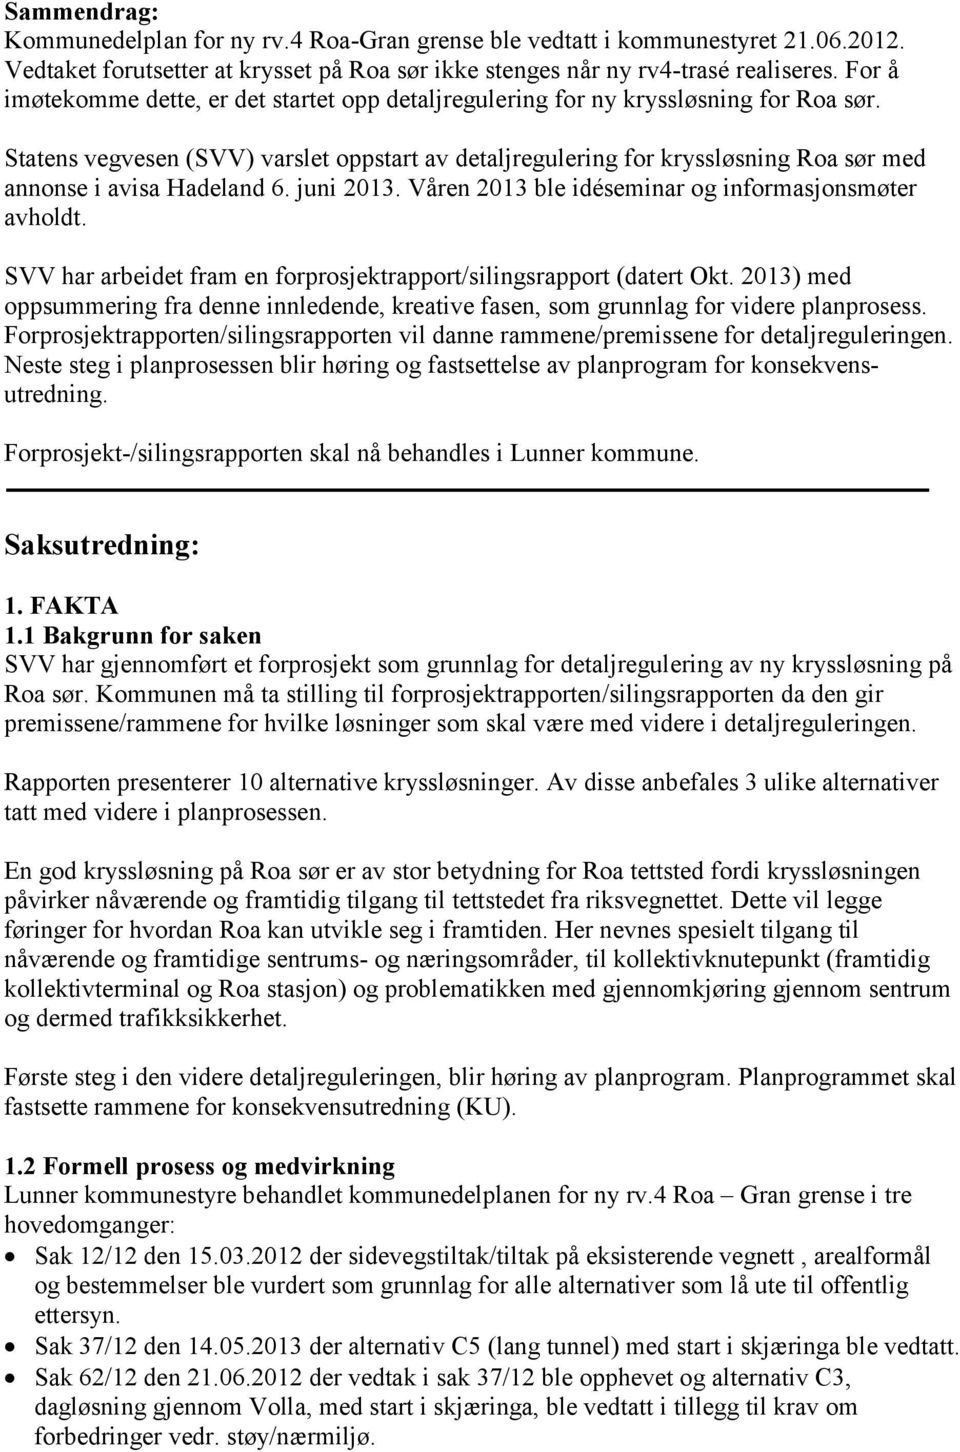 Statens vegvesen (SVV) varslet oppstart av detaljregulering for kryssløsning Roa sør med annonse i avisa Hadeland 6. juni 2013. Våren 2013 ble idéseminar og informasjonsmøter avholdt.